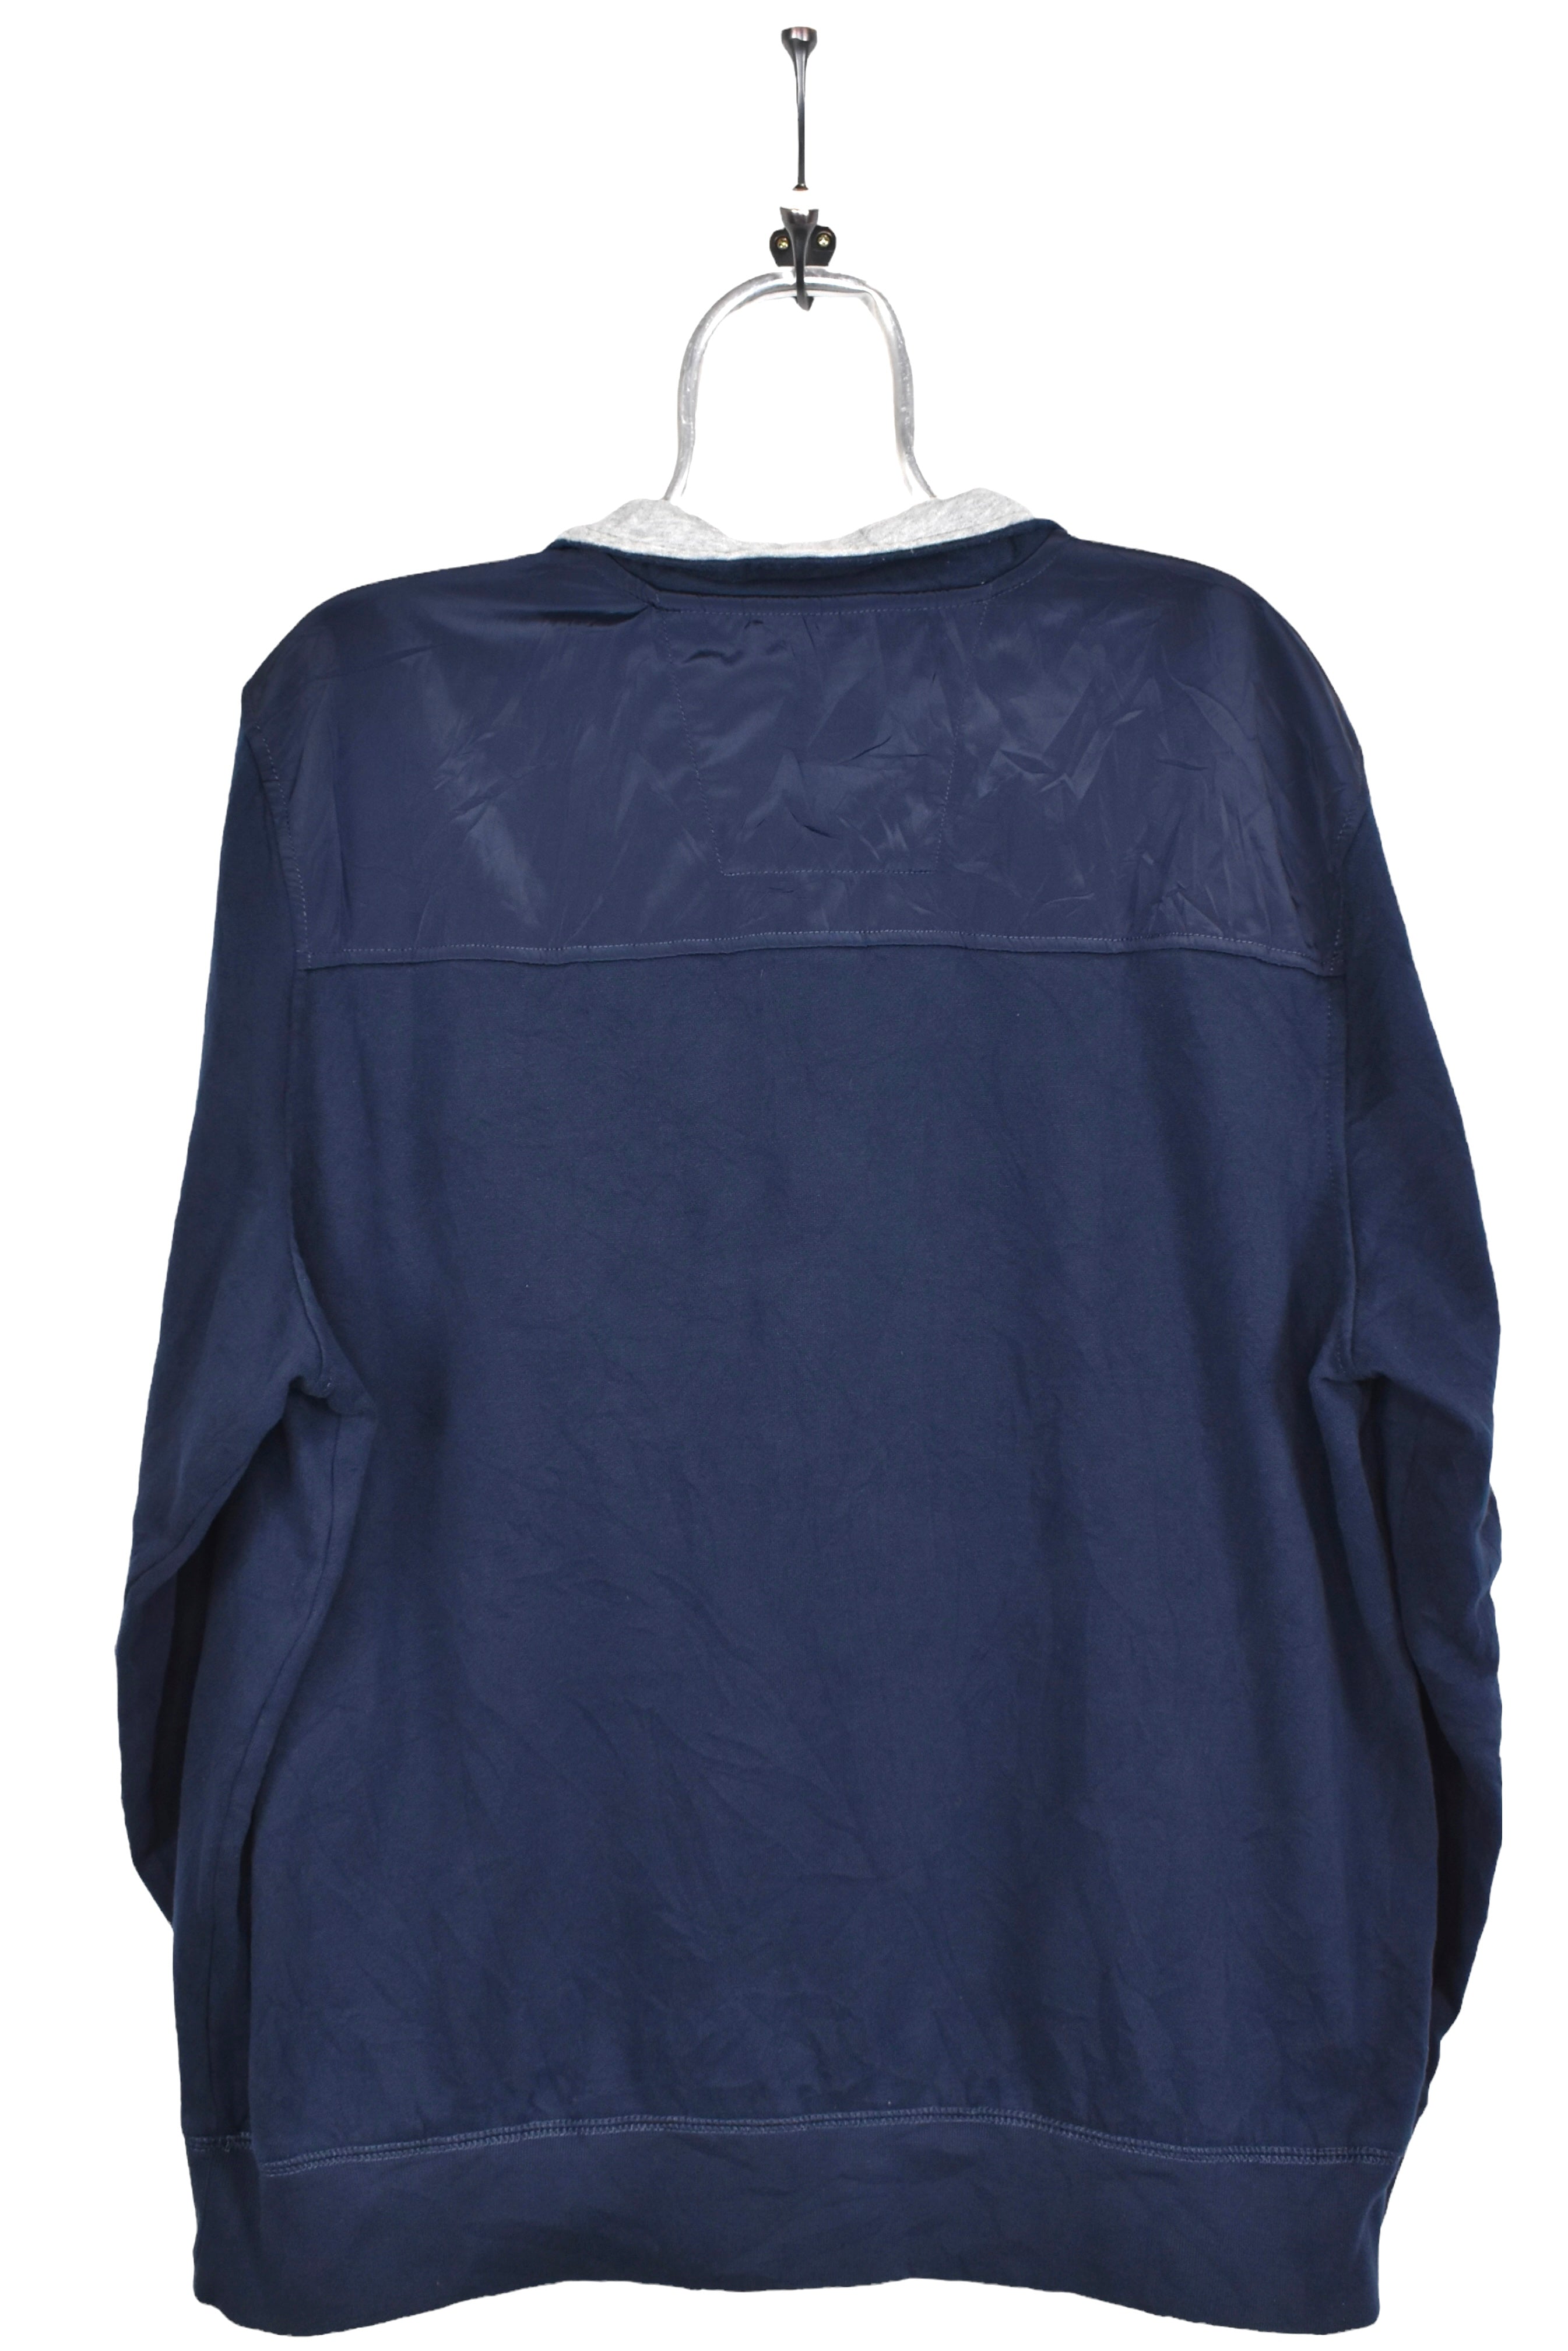 Vintage Nautica sweatshirt, navy blue embroidered 1/4 zip jumper - AU XL NAUTICA